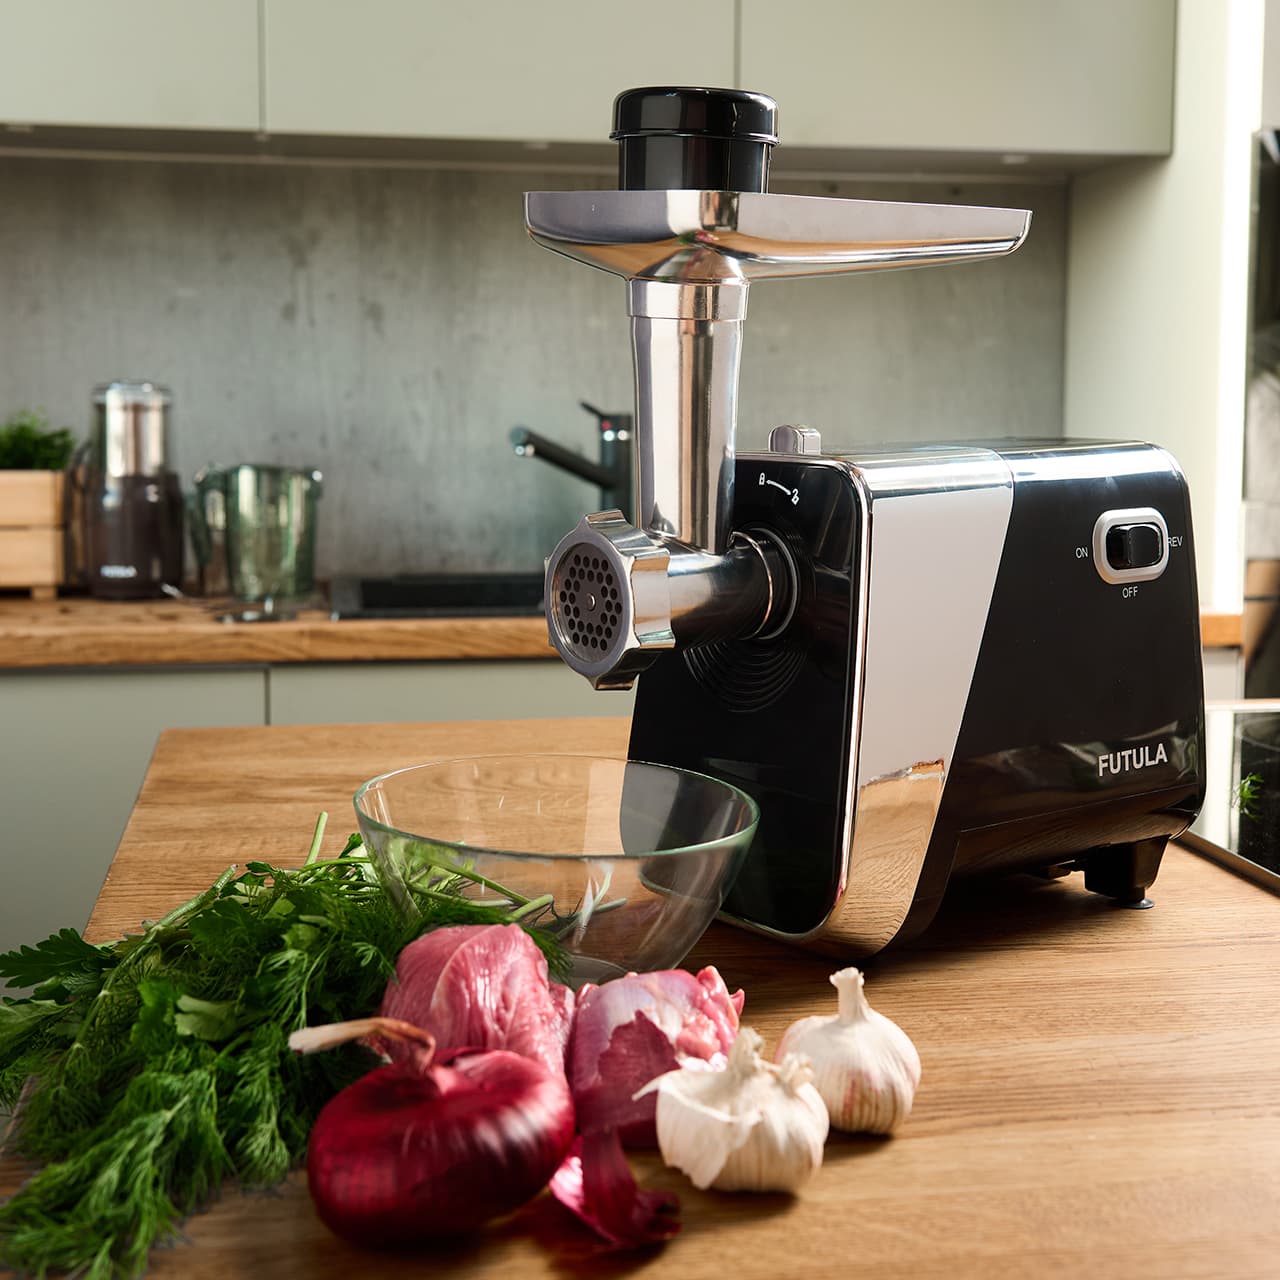 Мясорубка Futula MG8 впечатлит вас не только своей мощностью, но и вольёт дух современного дизайна в каждый уголок вашей кухни!